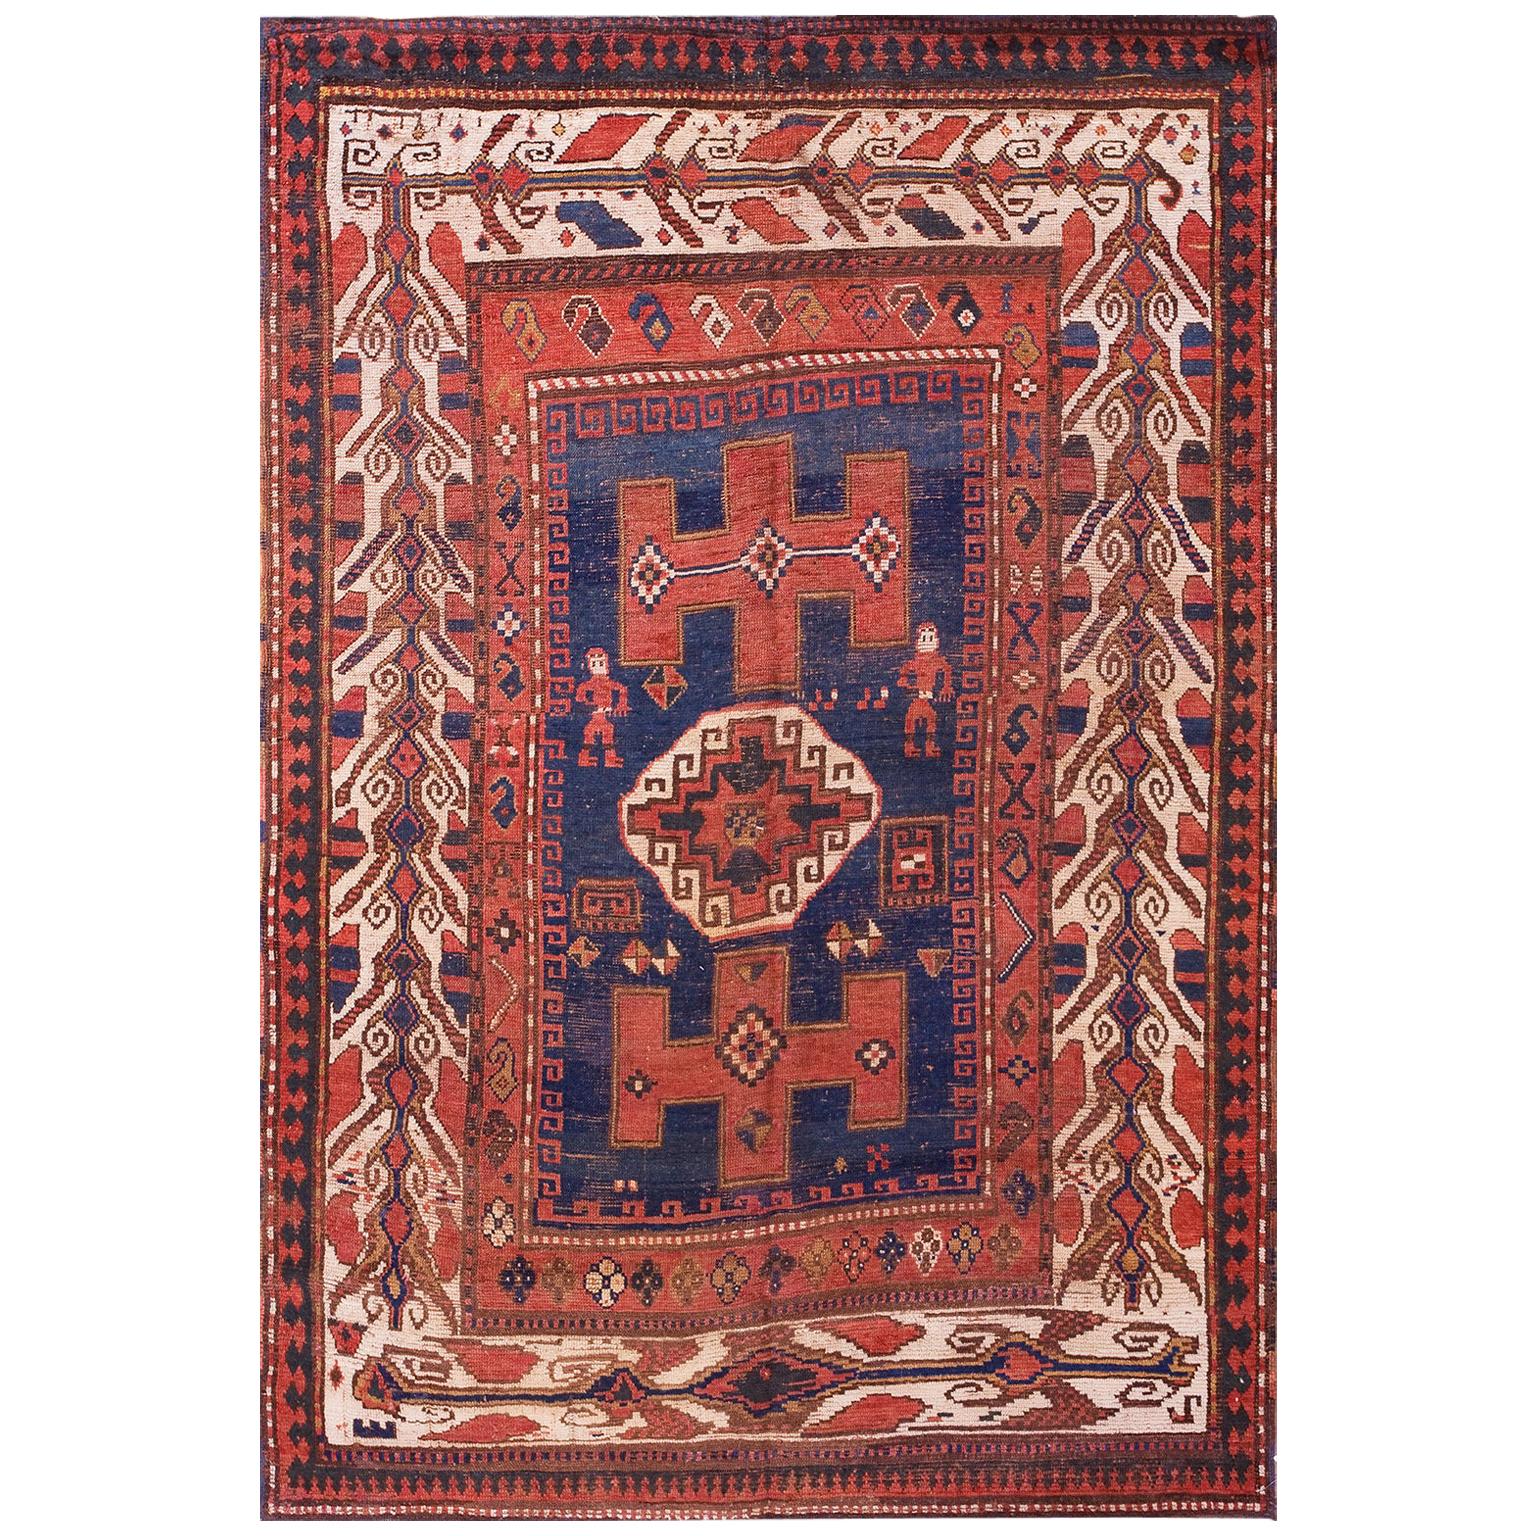 19th Century Caucasian Kazak Carpet ( 4'10 "x 7' - 147 x 213 )